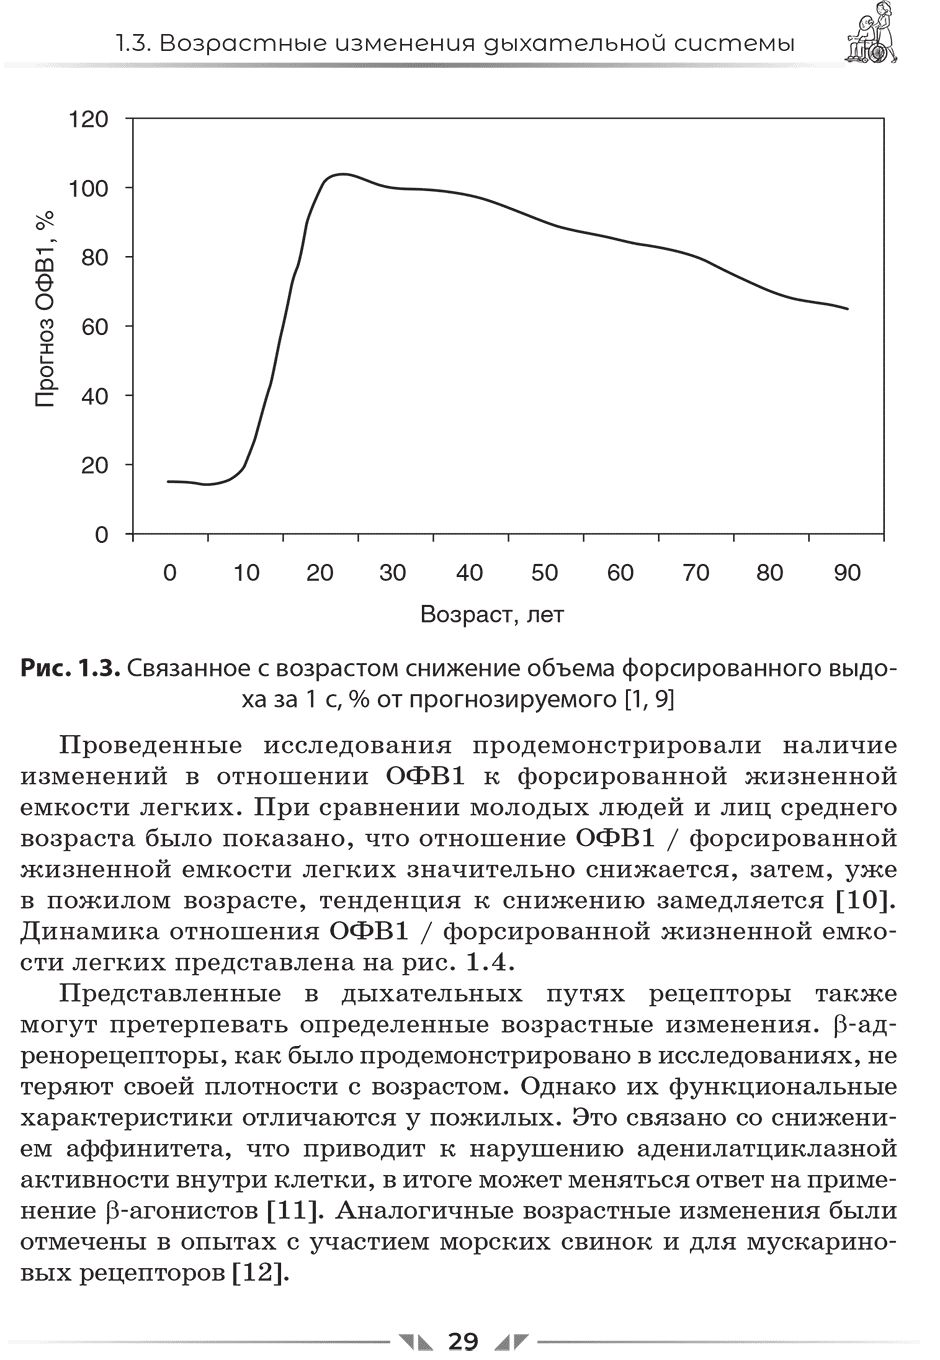 Рис. 1.3. Связанное с возрастом снижение объема форсированного выдоха за 1 с, % от прогнозируемого 